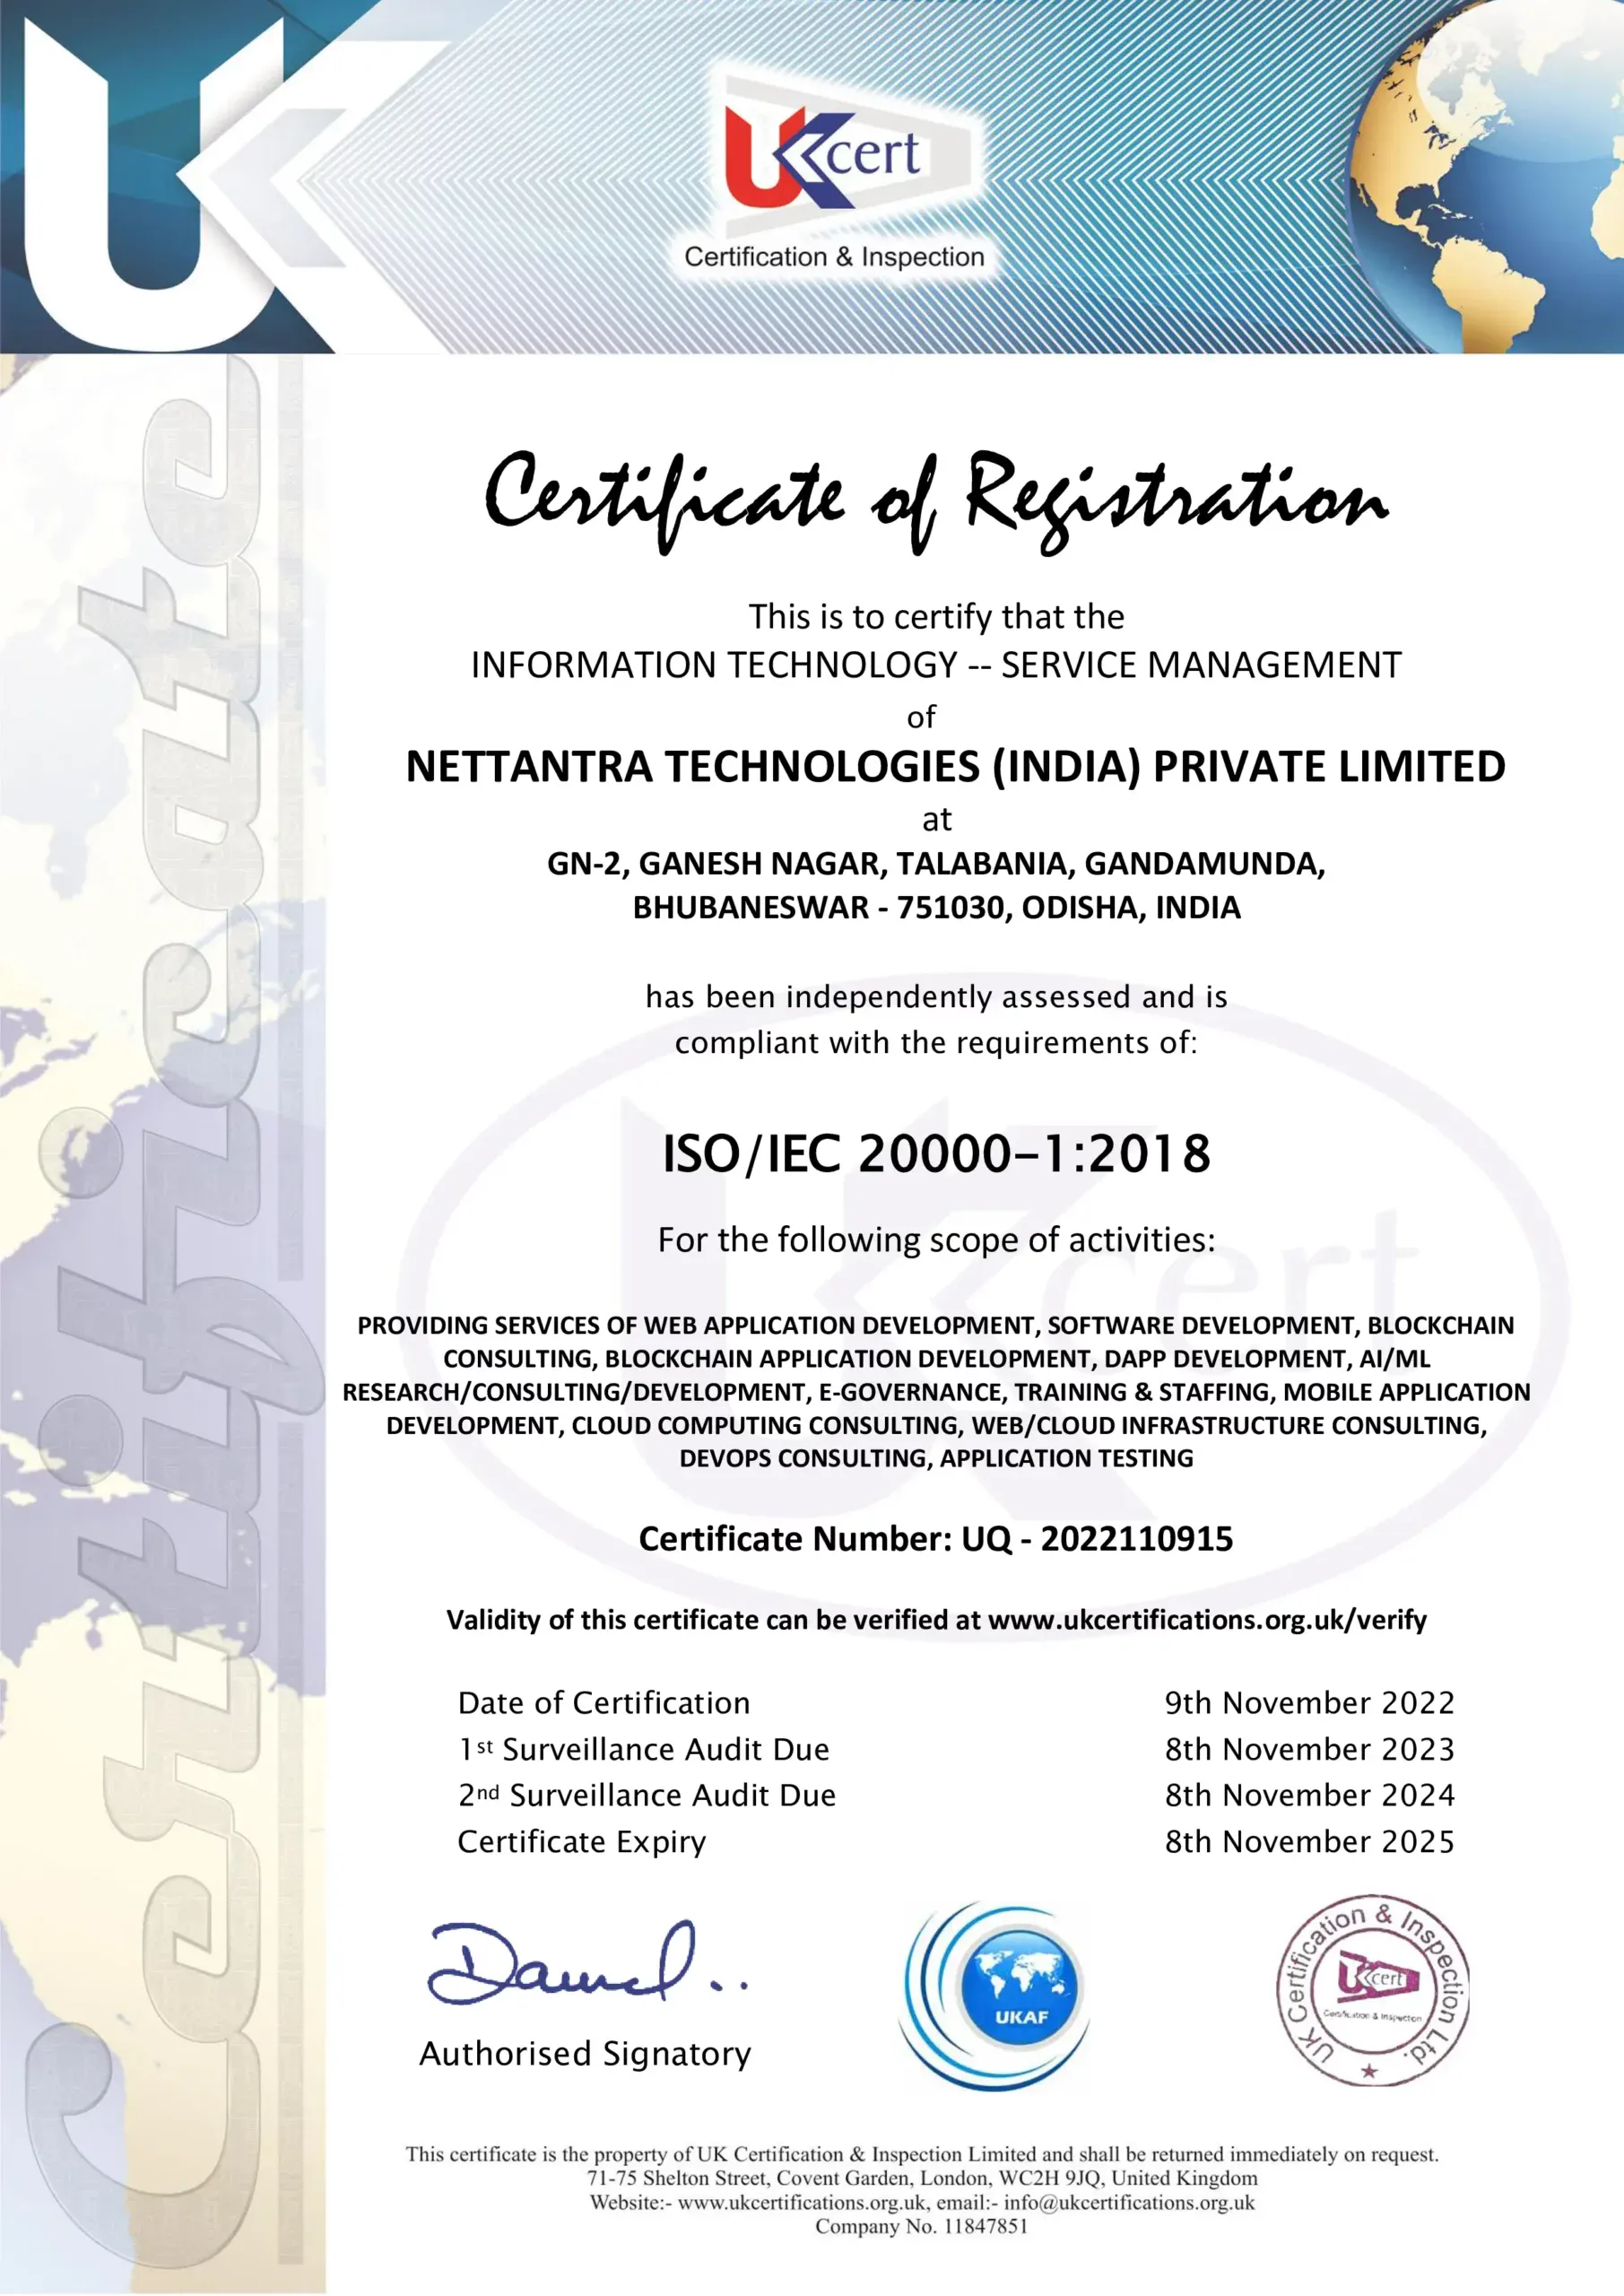 NetTantra - ISO-IEC 20000-1-2018 Certification